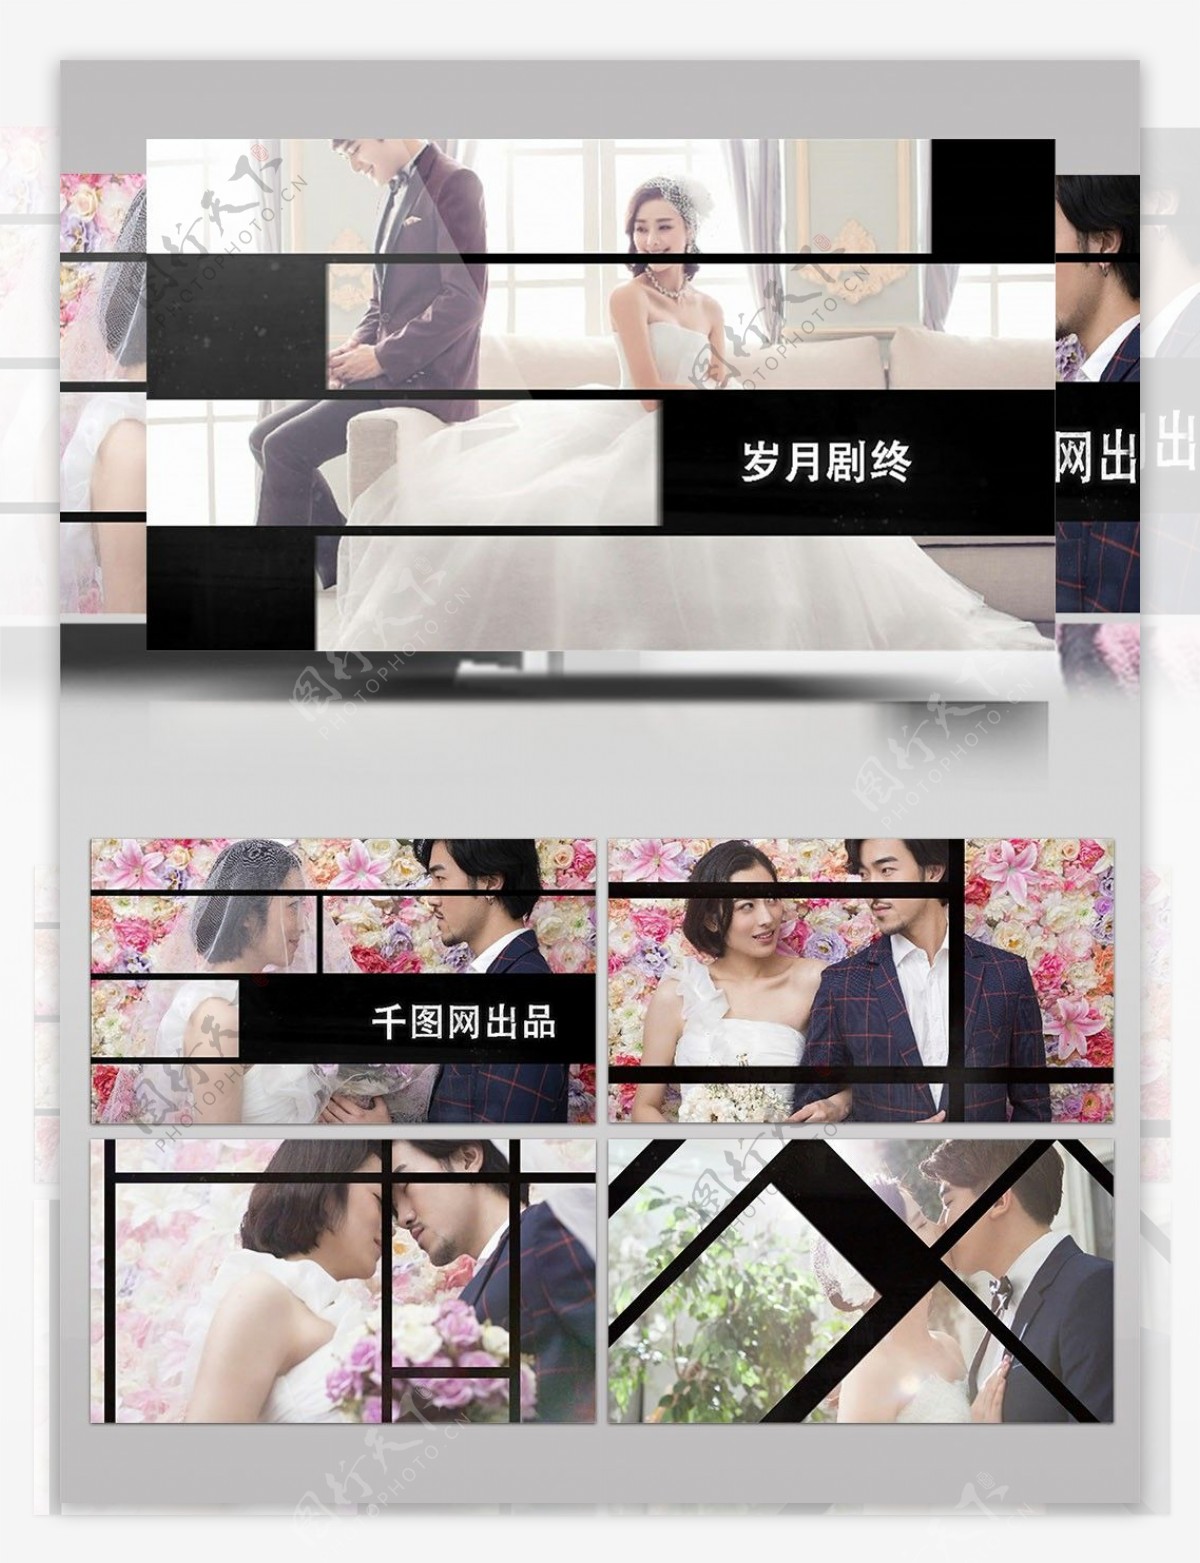 复古分屏切割组合婚礼图文内容展示AE模板